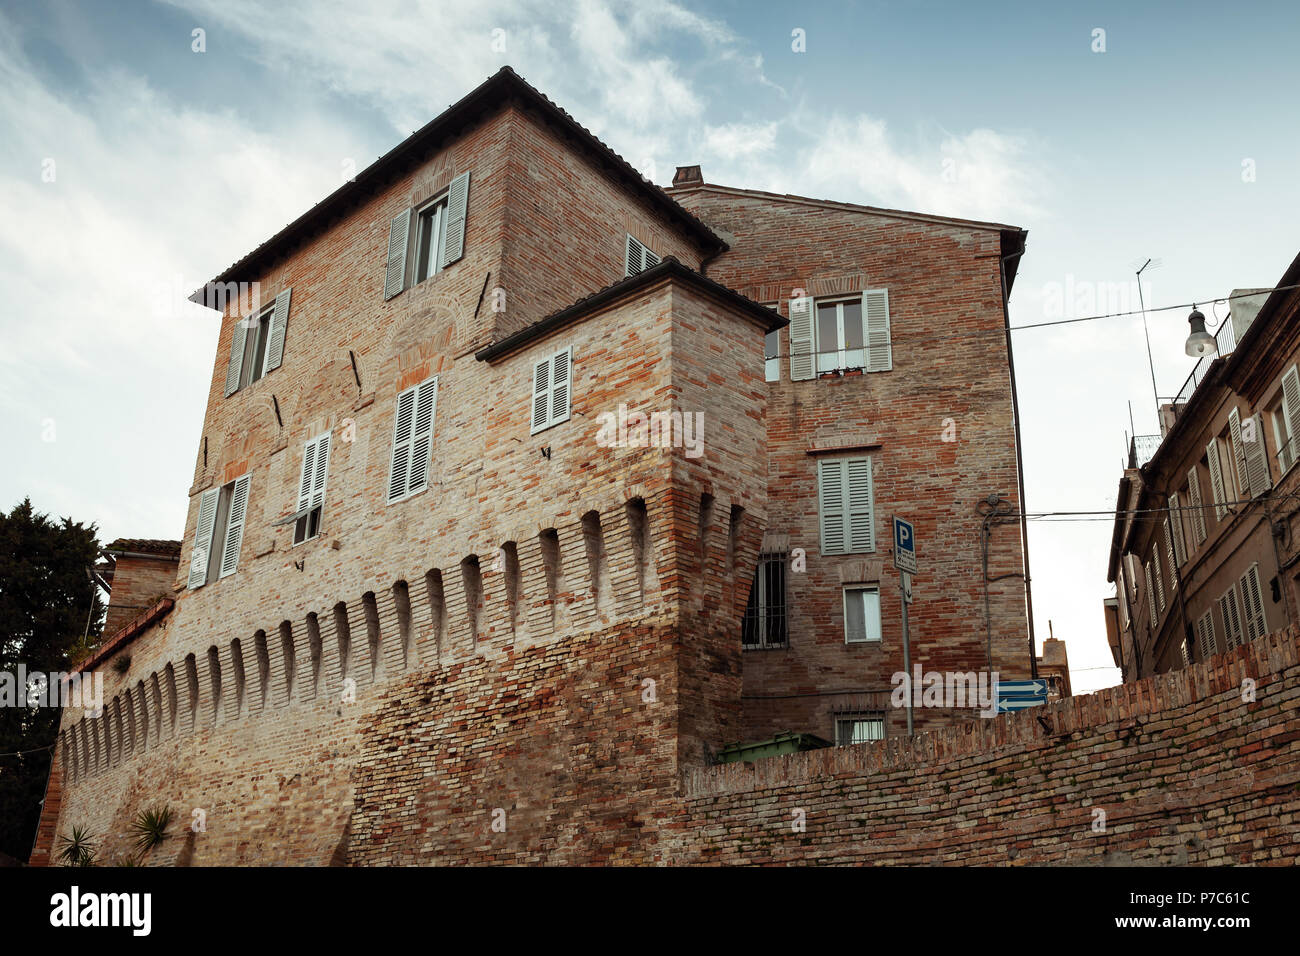 Fermo Stadt mit alten Häusern, Italien. Vintage Farben Foto Stockfoto